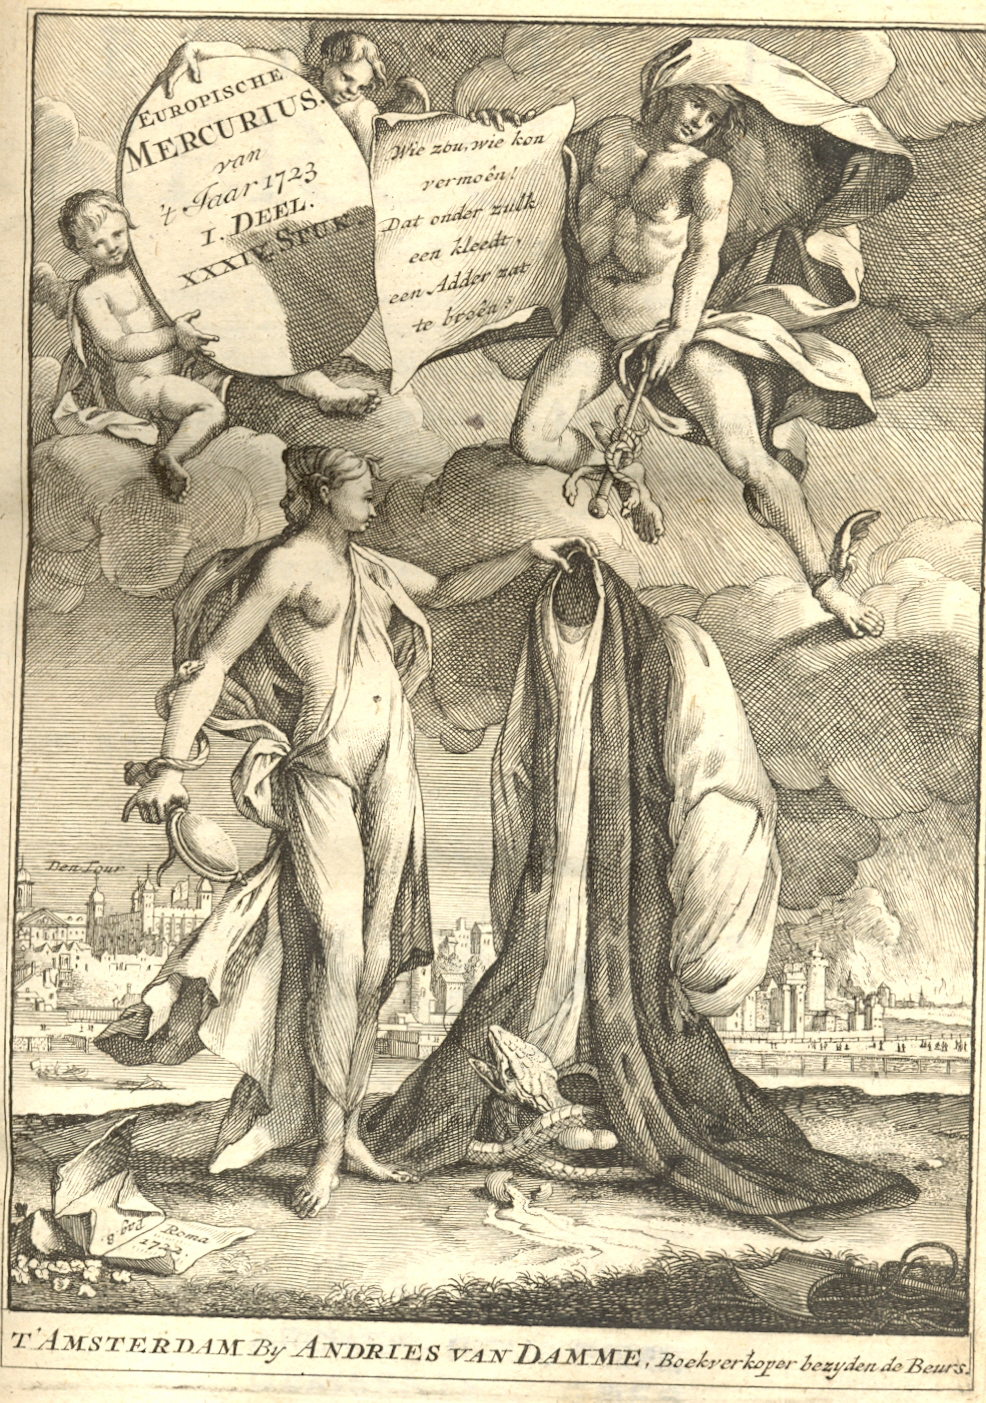 Europische Mercurius, 1723.